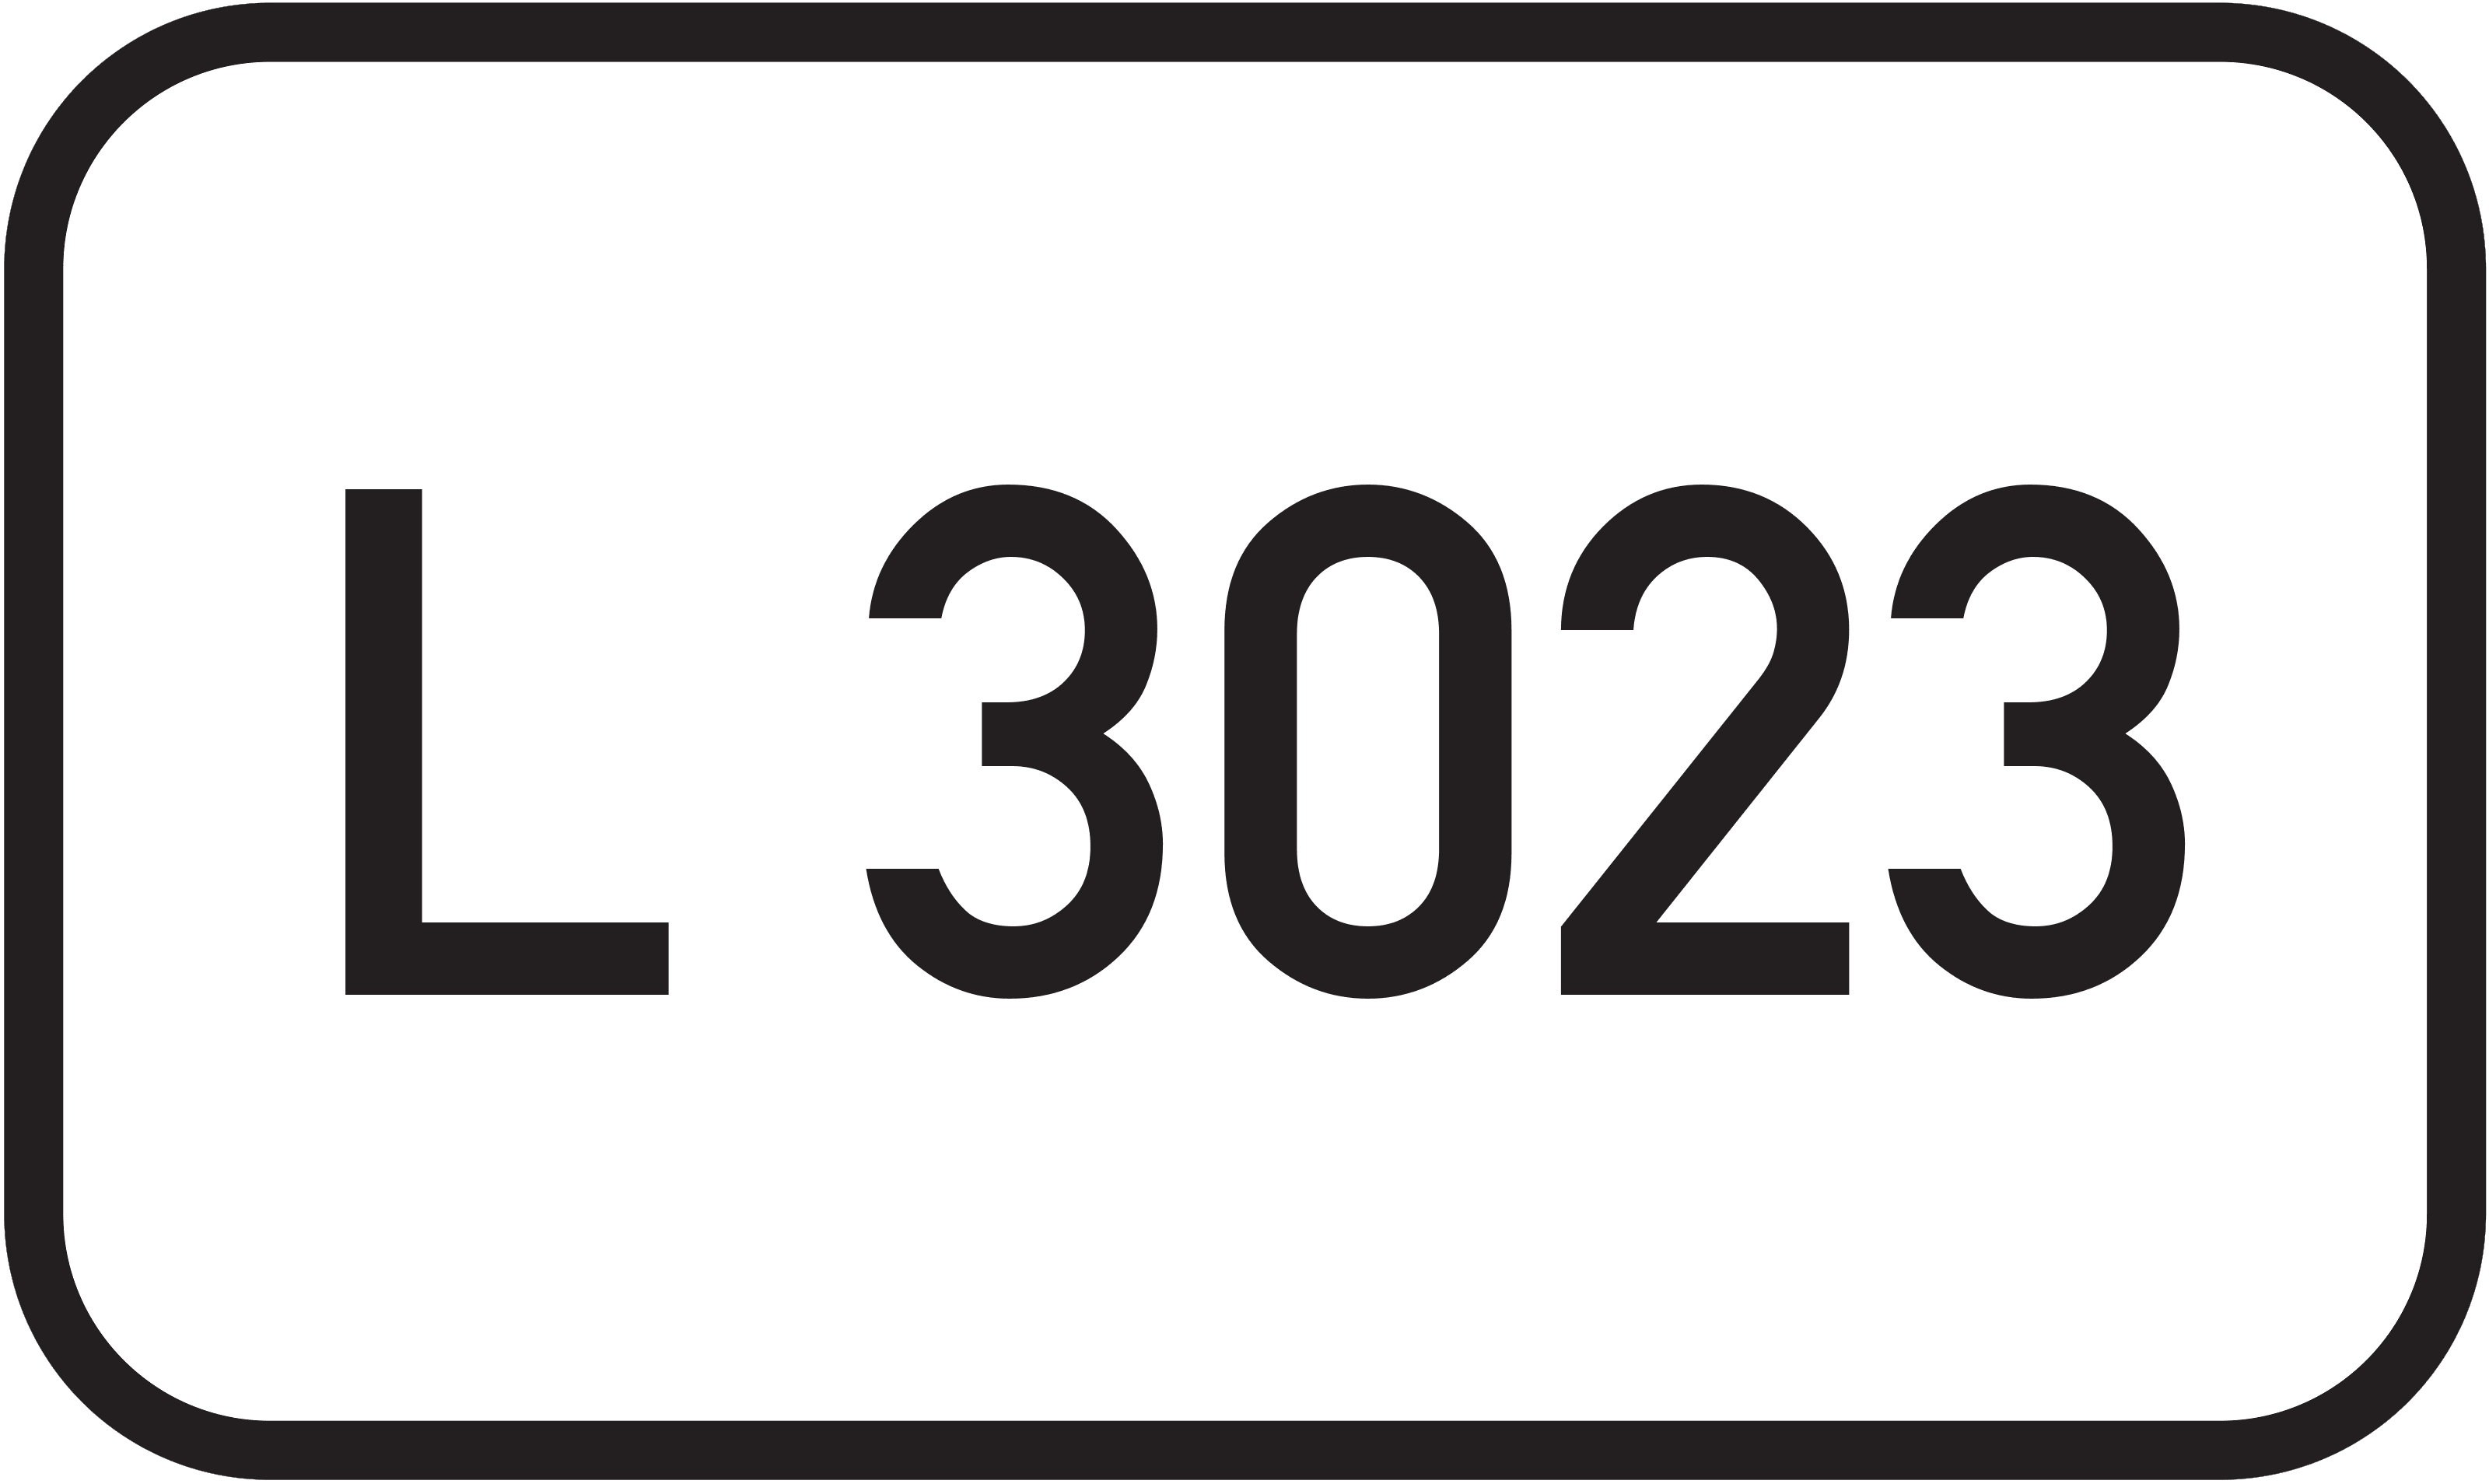 Landesstraße L 3023